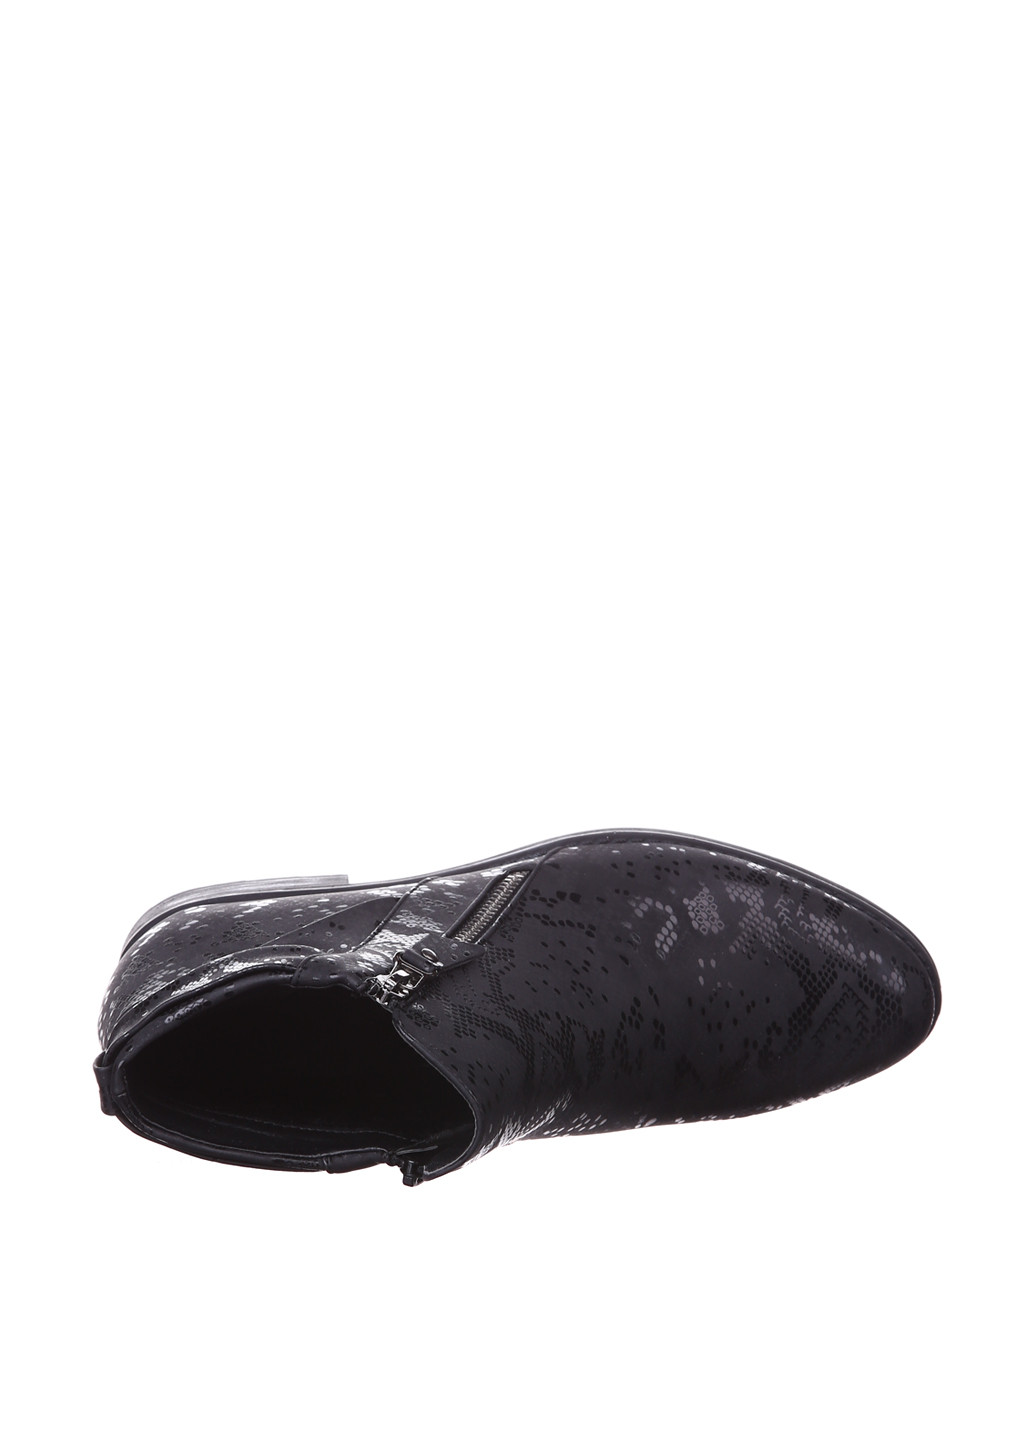 Осенние ботинки Ctogo Gogo из искусственной кожи